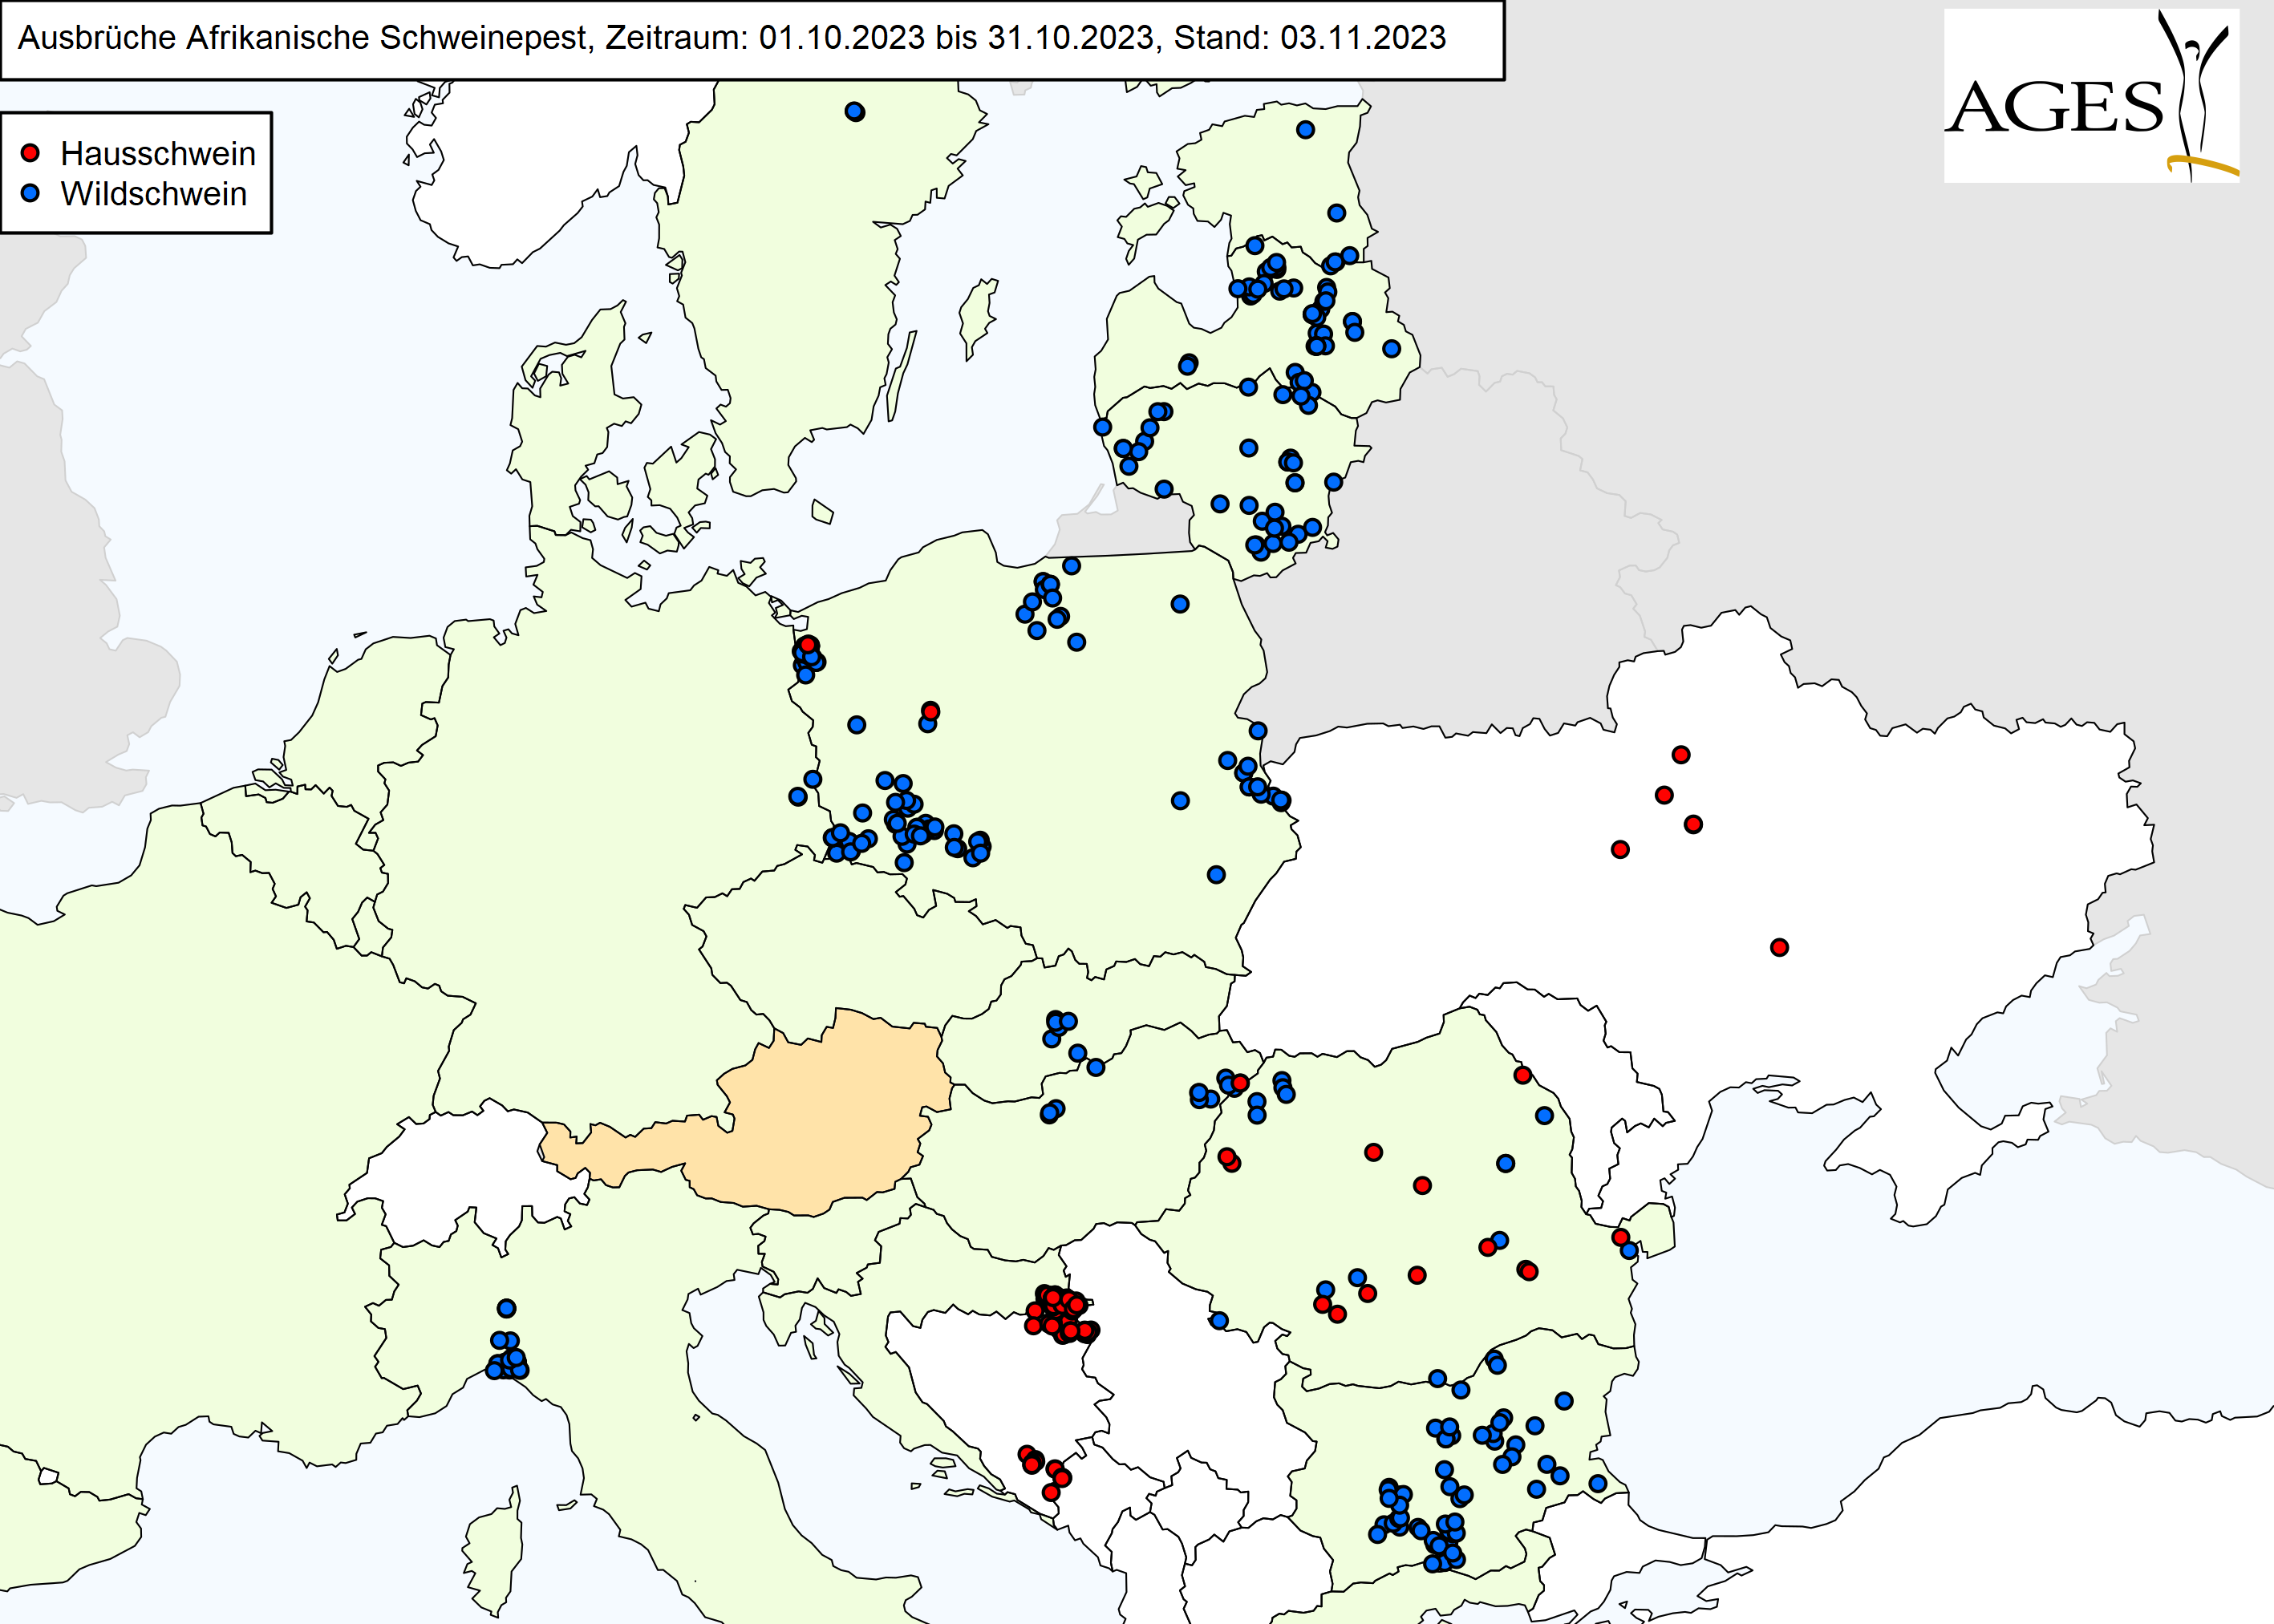 Europakarte zu ASP-Ausbrüche wie in "Situation in Europa" beschrieben.